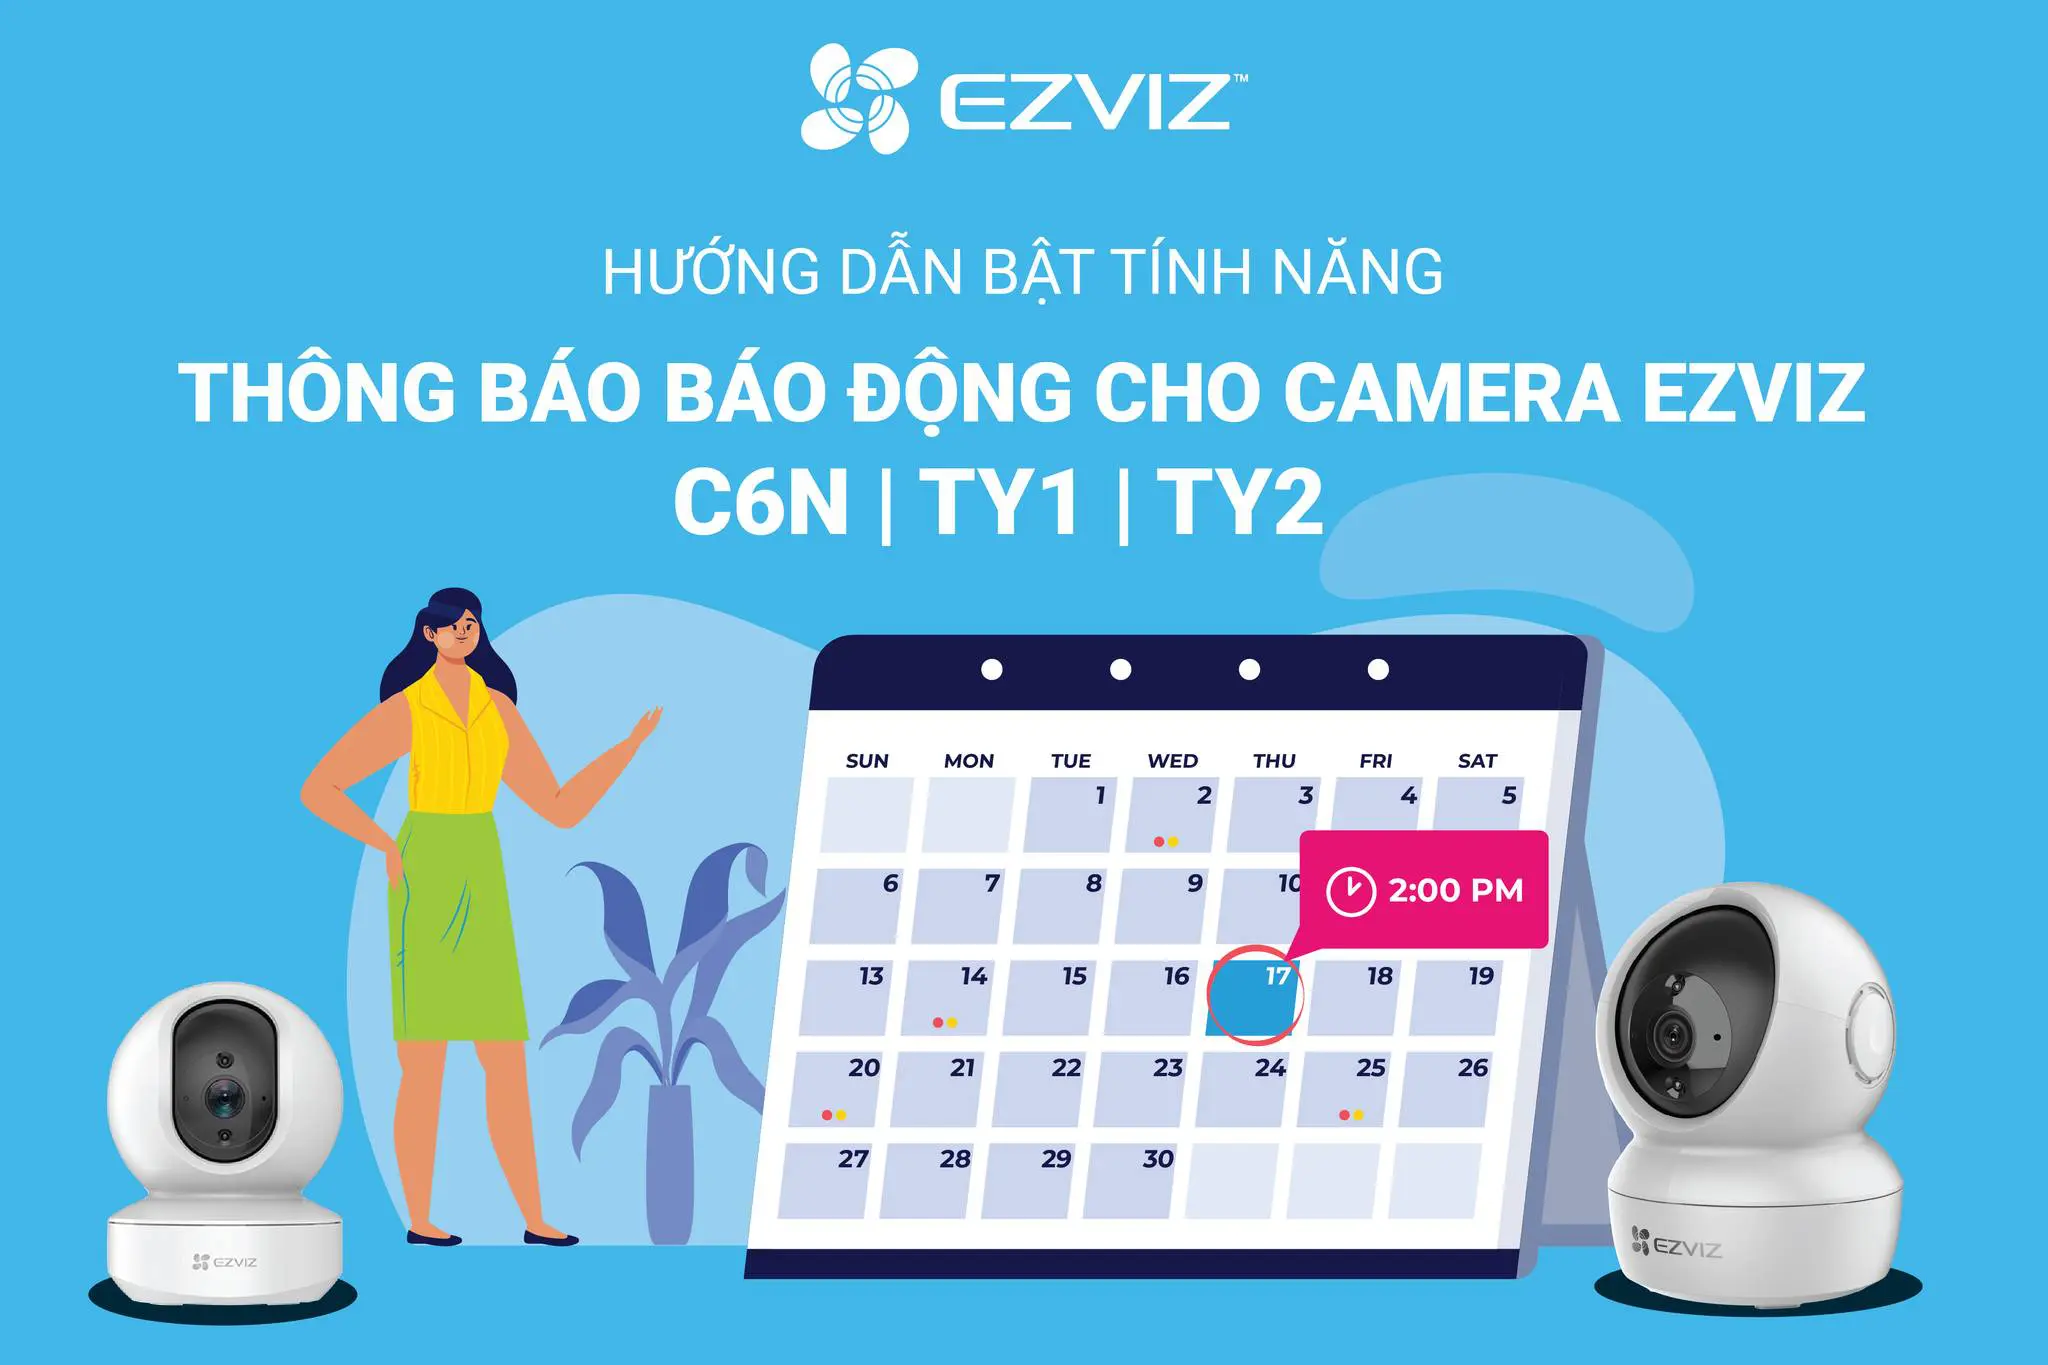 Hướng dẫn cài đặt tính năng thông báo báo động camera Ezviz